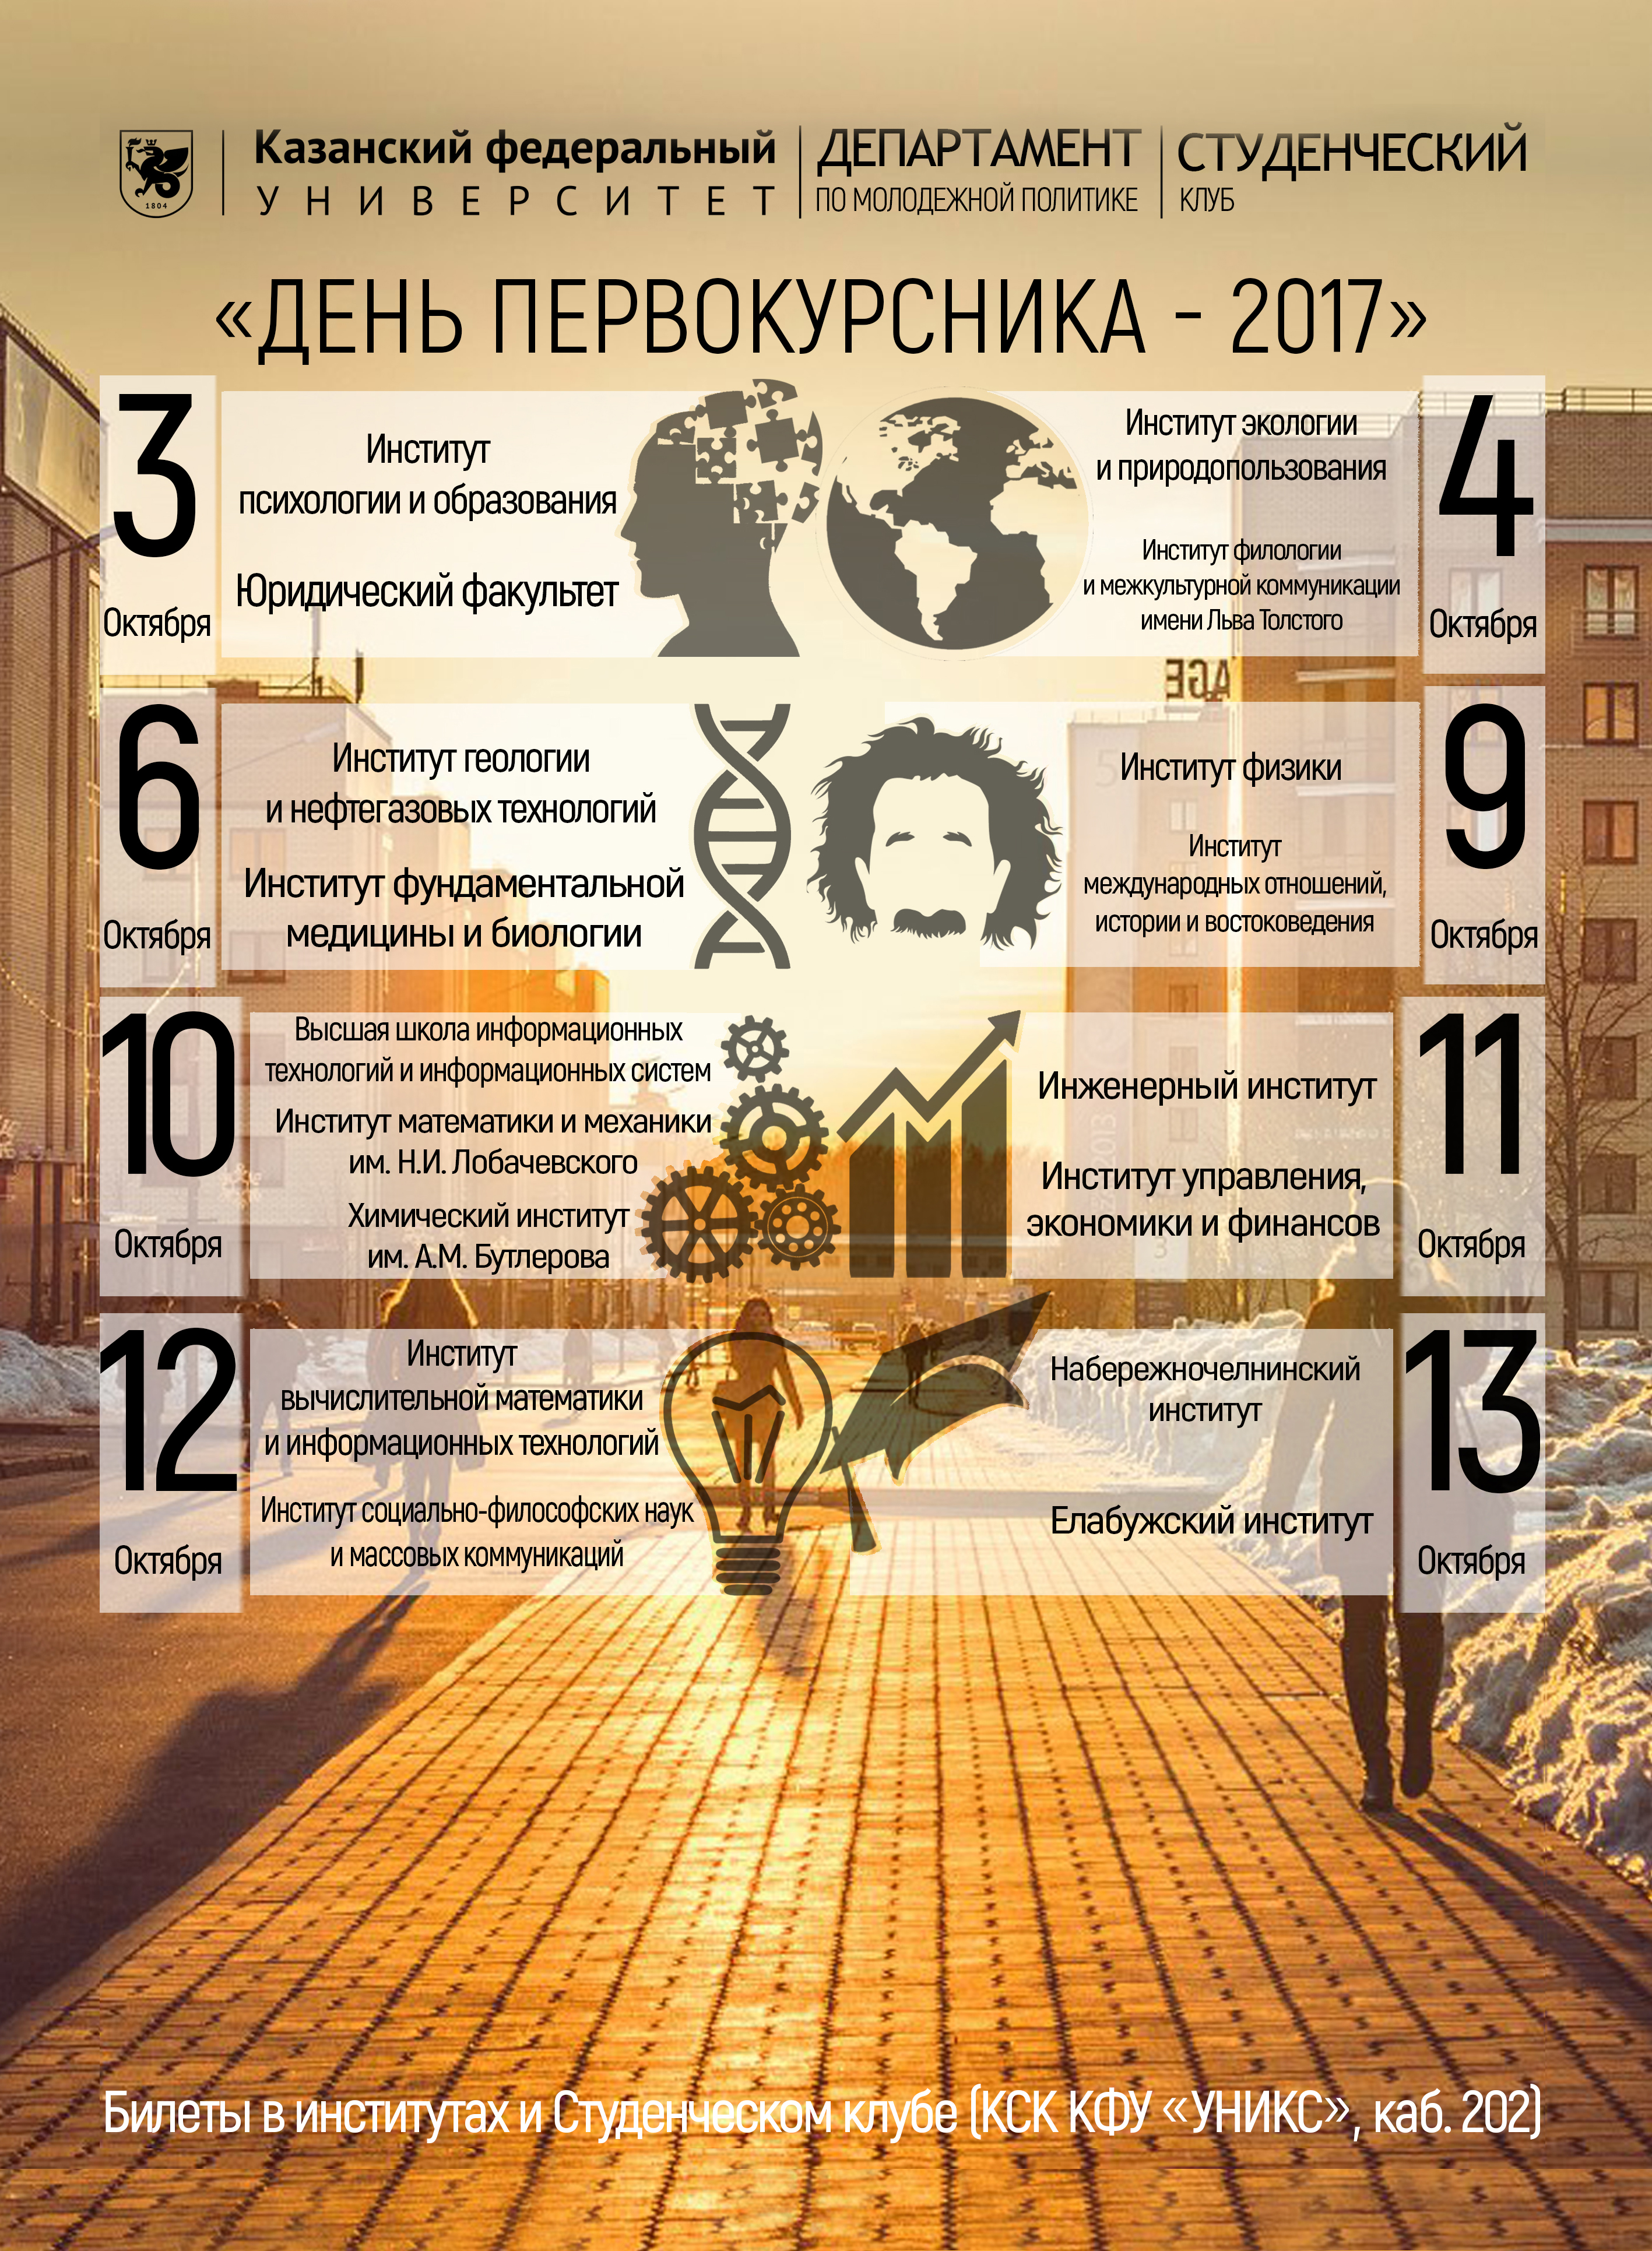 Студенческий фестиваль «День первокурсника» - 2017!